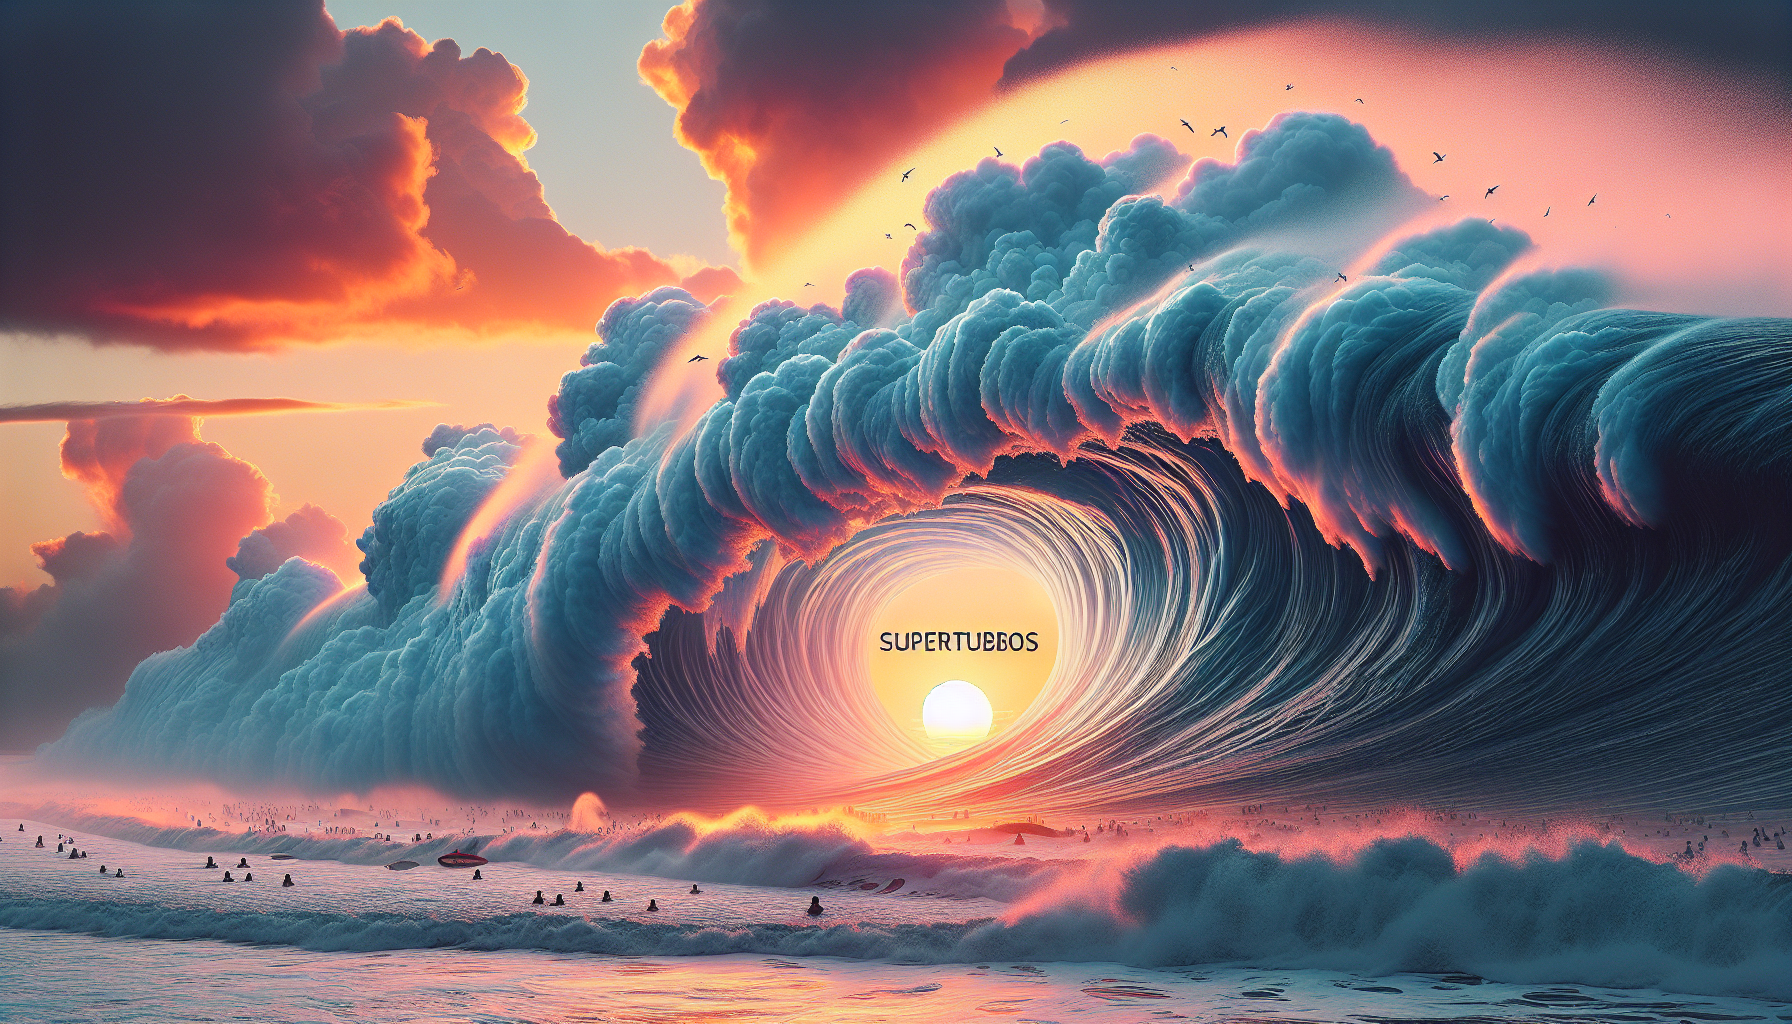 Supertubos: Descubra as Melhores Dicas e Segredos para Surfar na Perfeição de Portugal